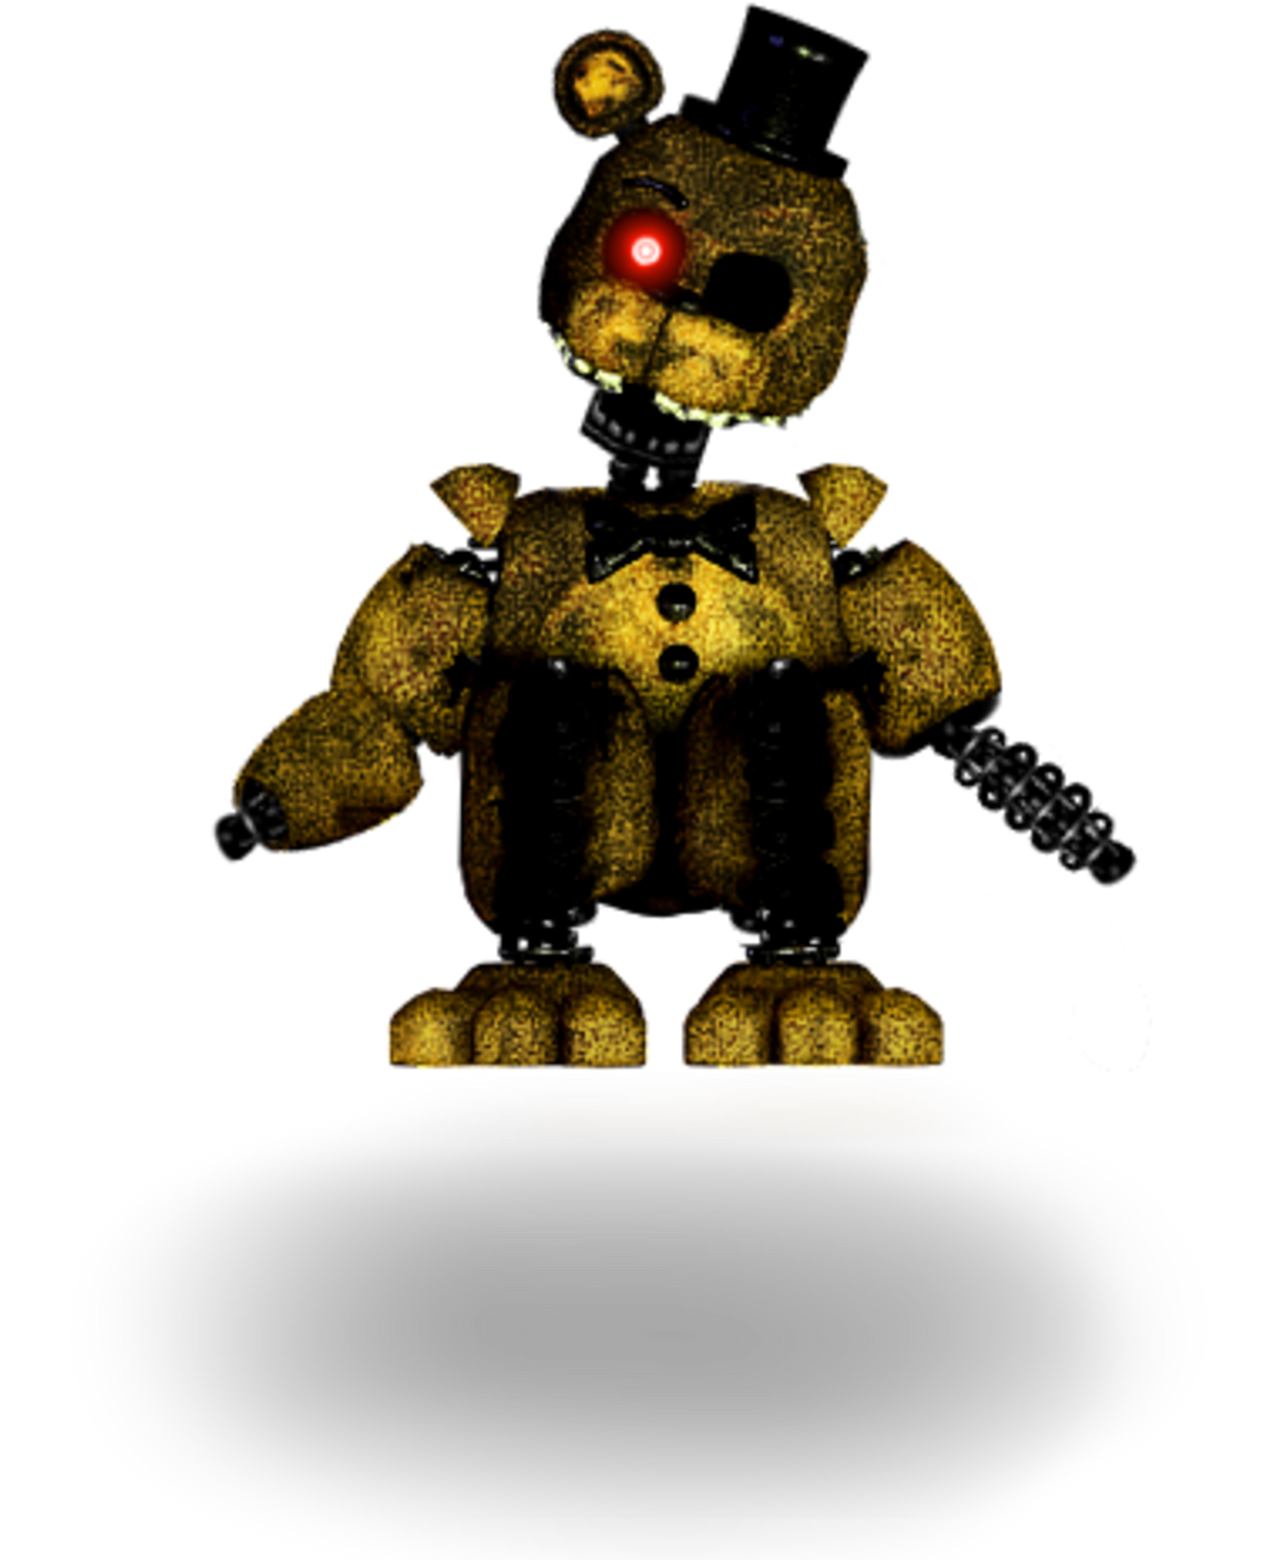 Ignited Freddy, TheJoyofCreation Wikia